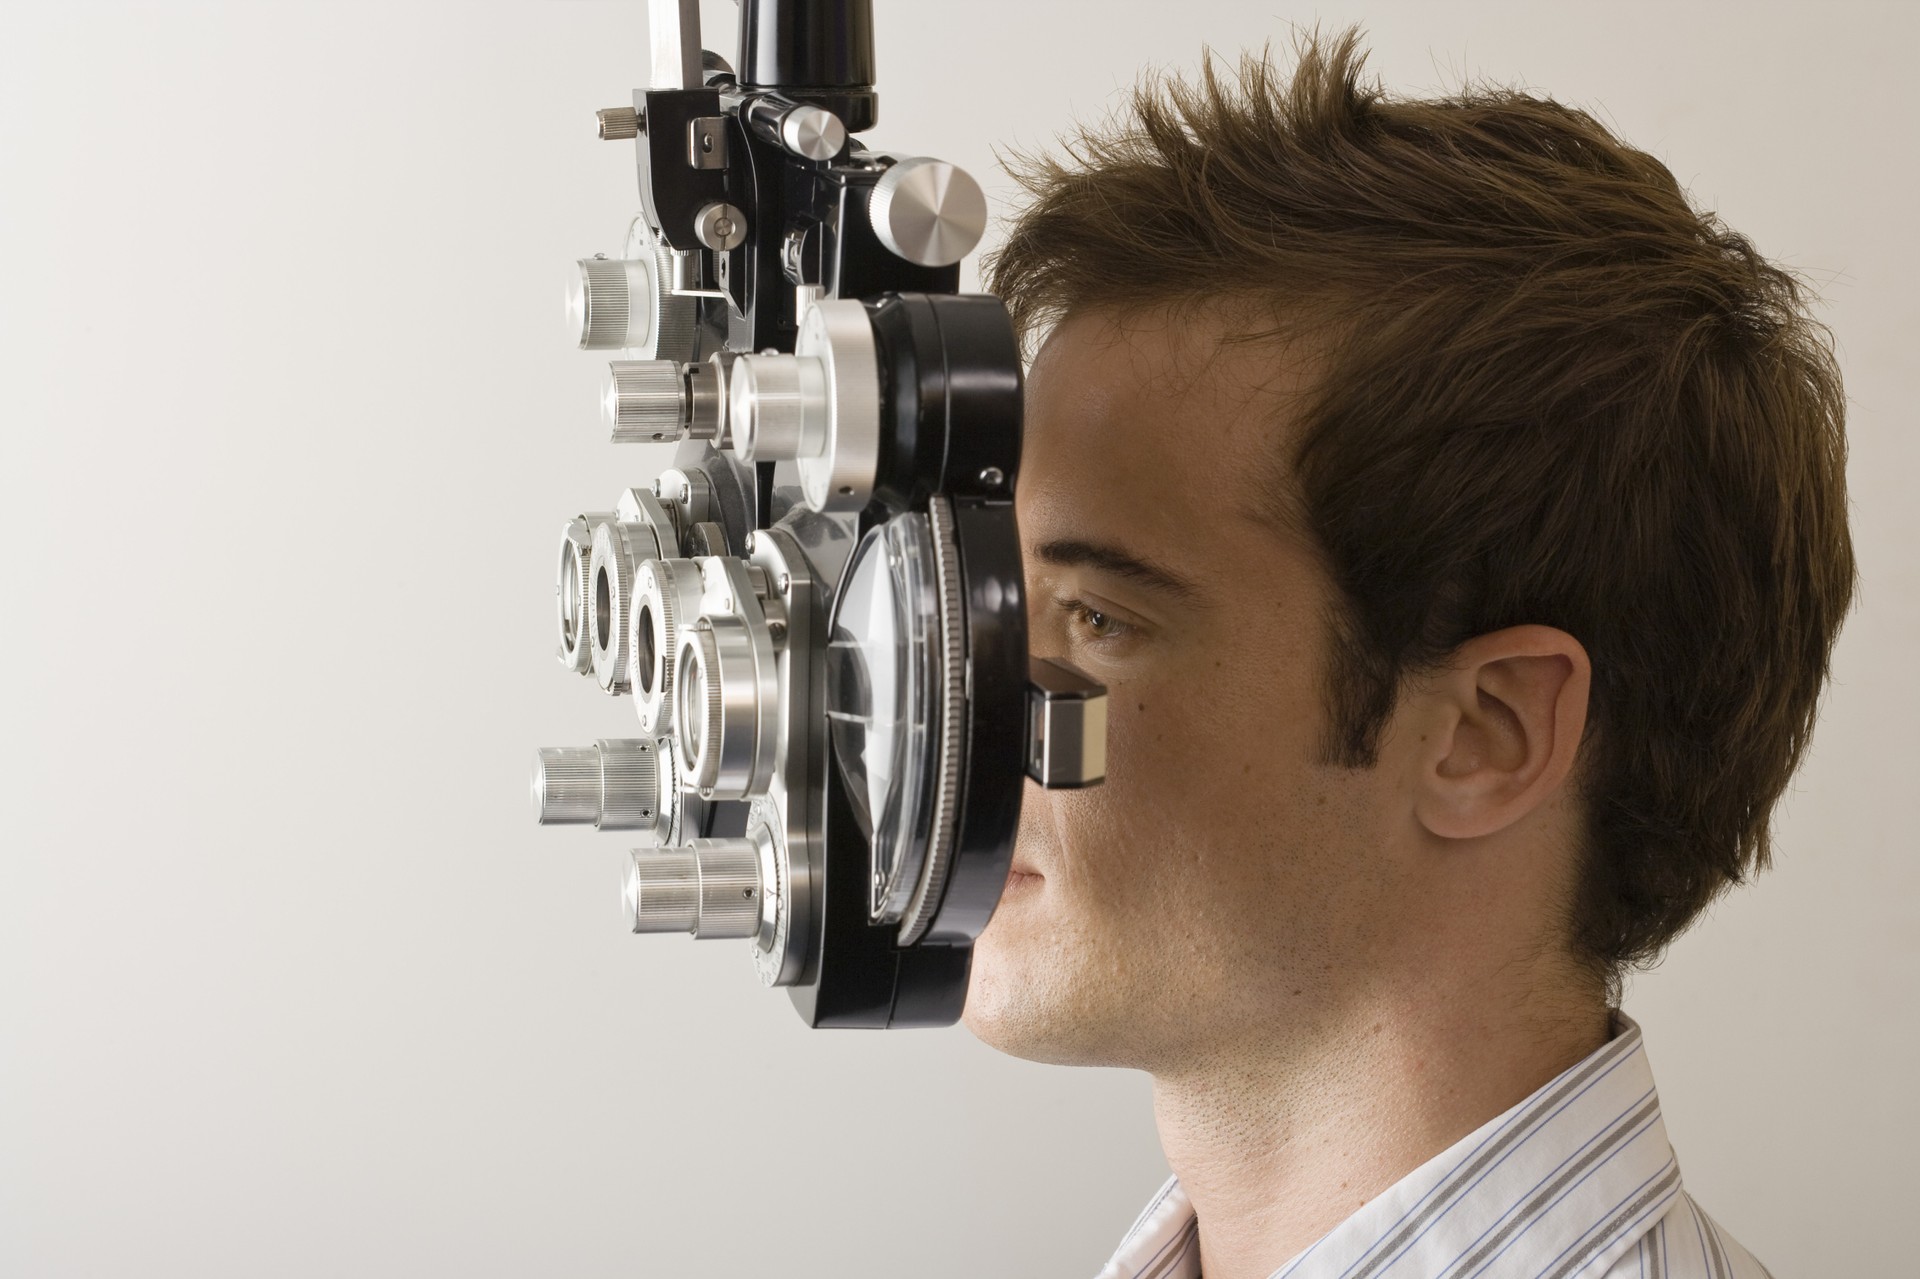 Exames de vista podem ajudar a descobrir o Alzheimer antes do normal (Foto: Divulgação)